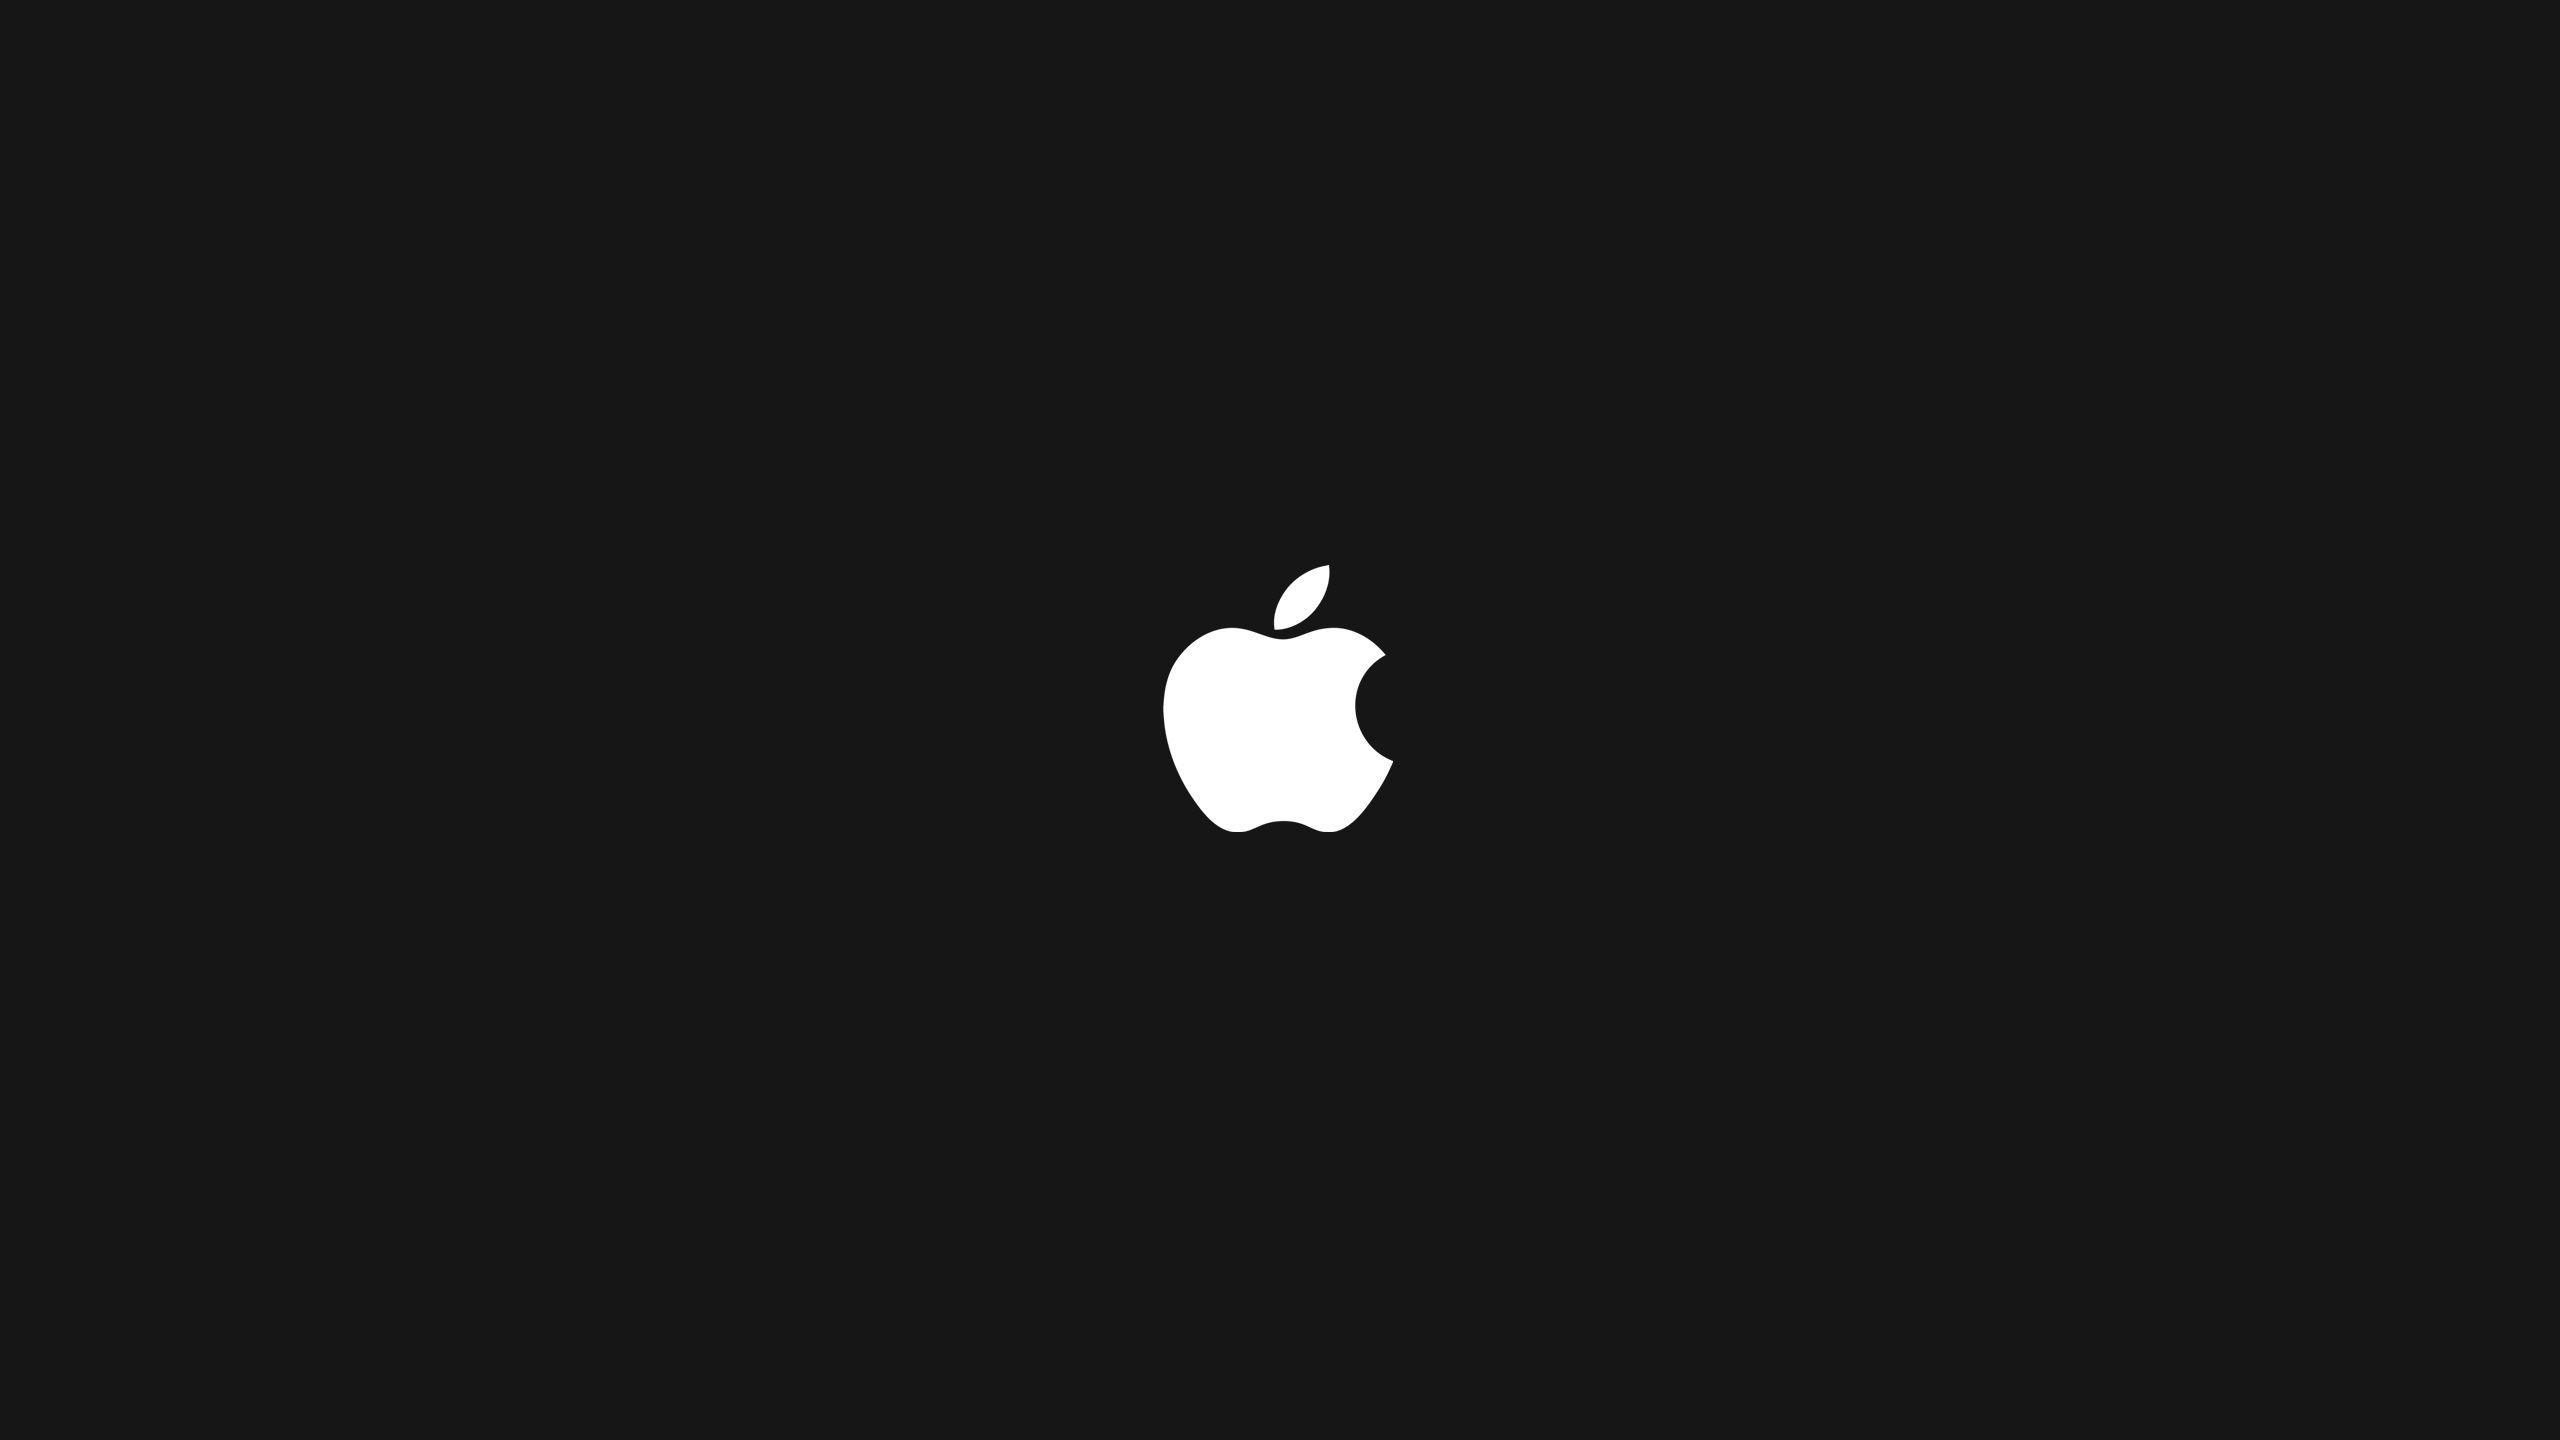 Fond d'écran Louis vuitton apple  Apple wallpaper, Apple logo wallpaper  iphone, Iphone wallpaper fashion